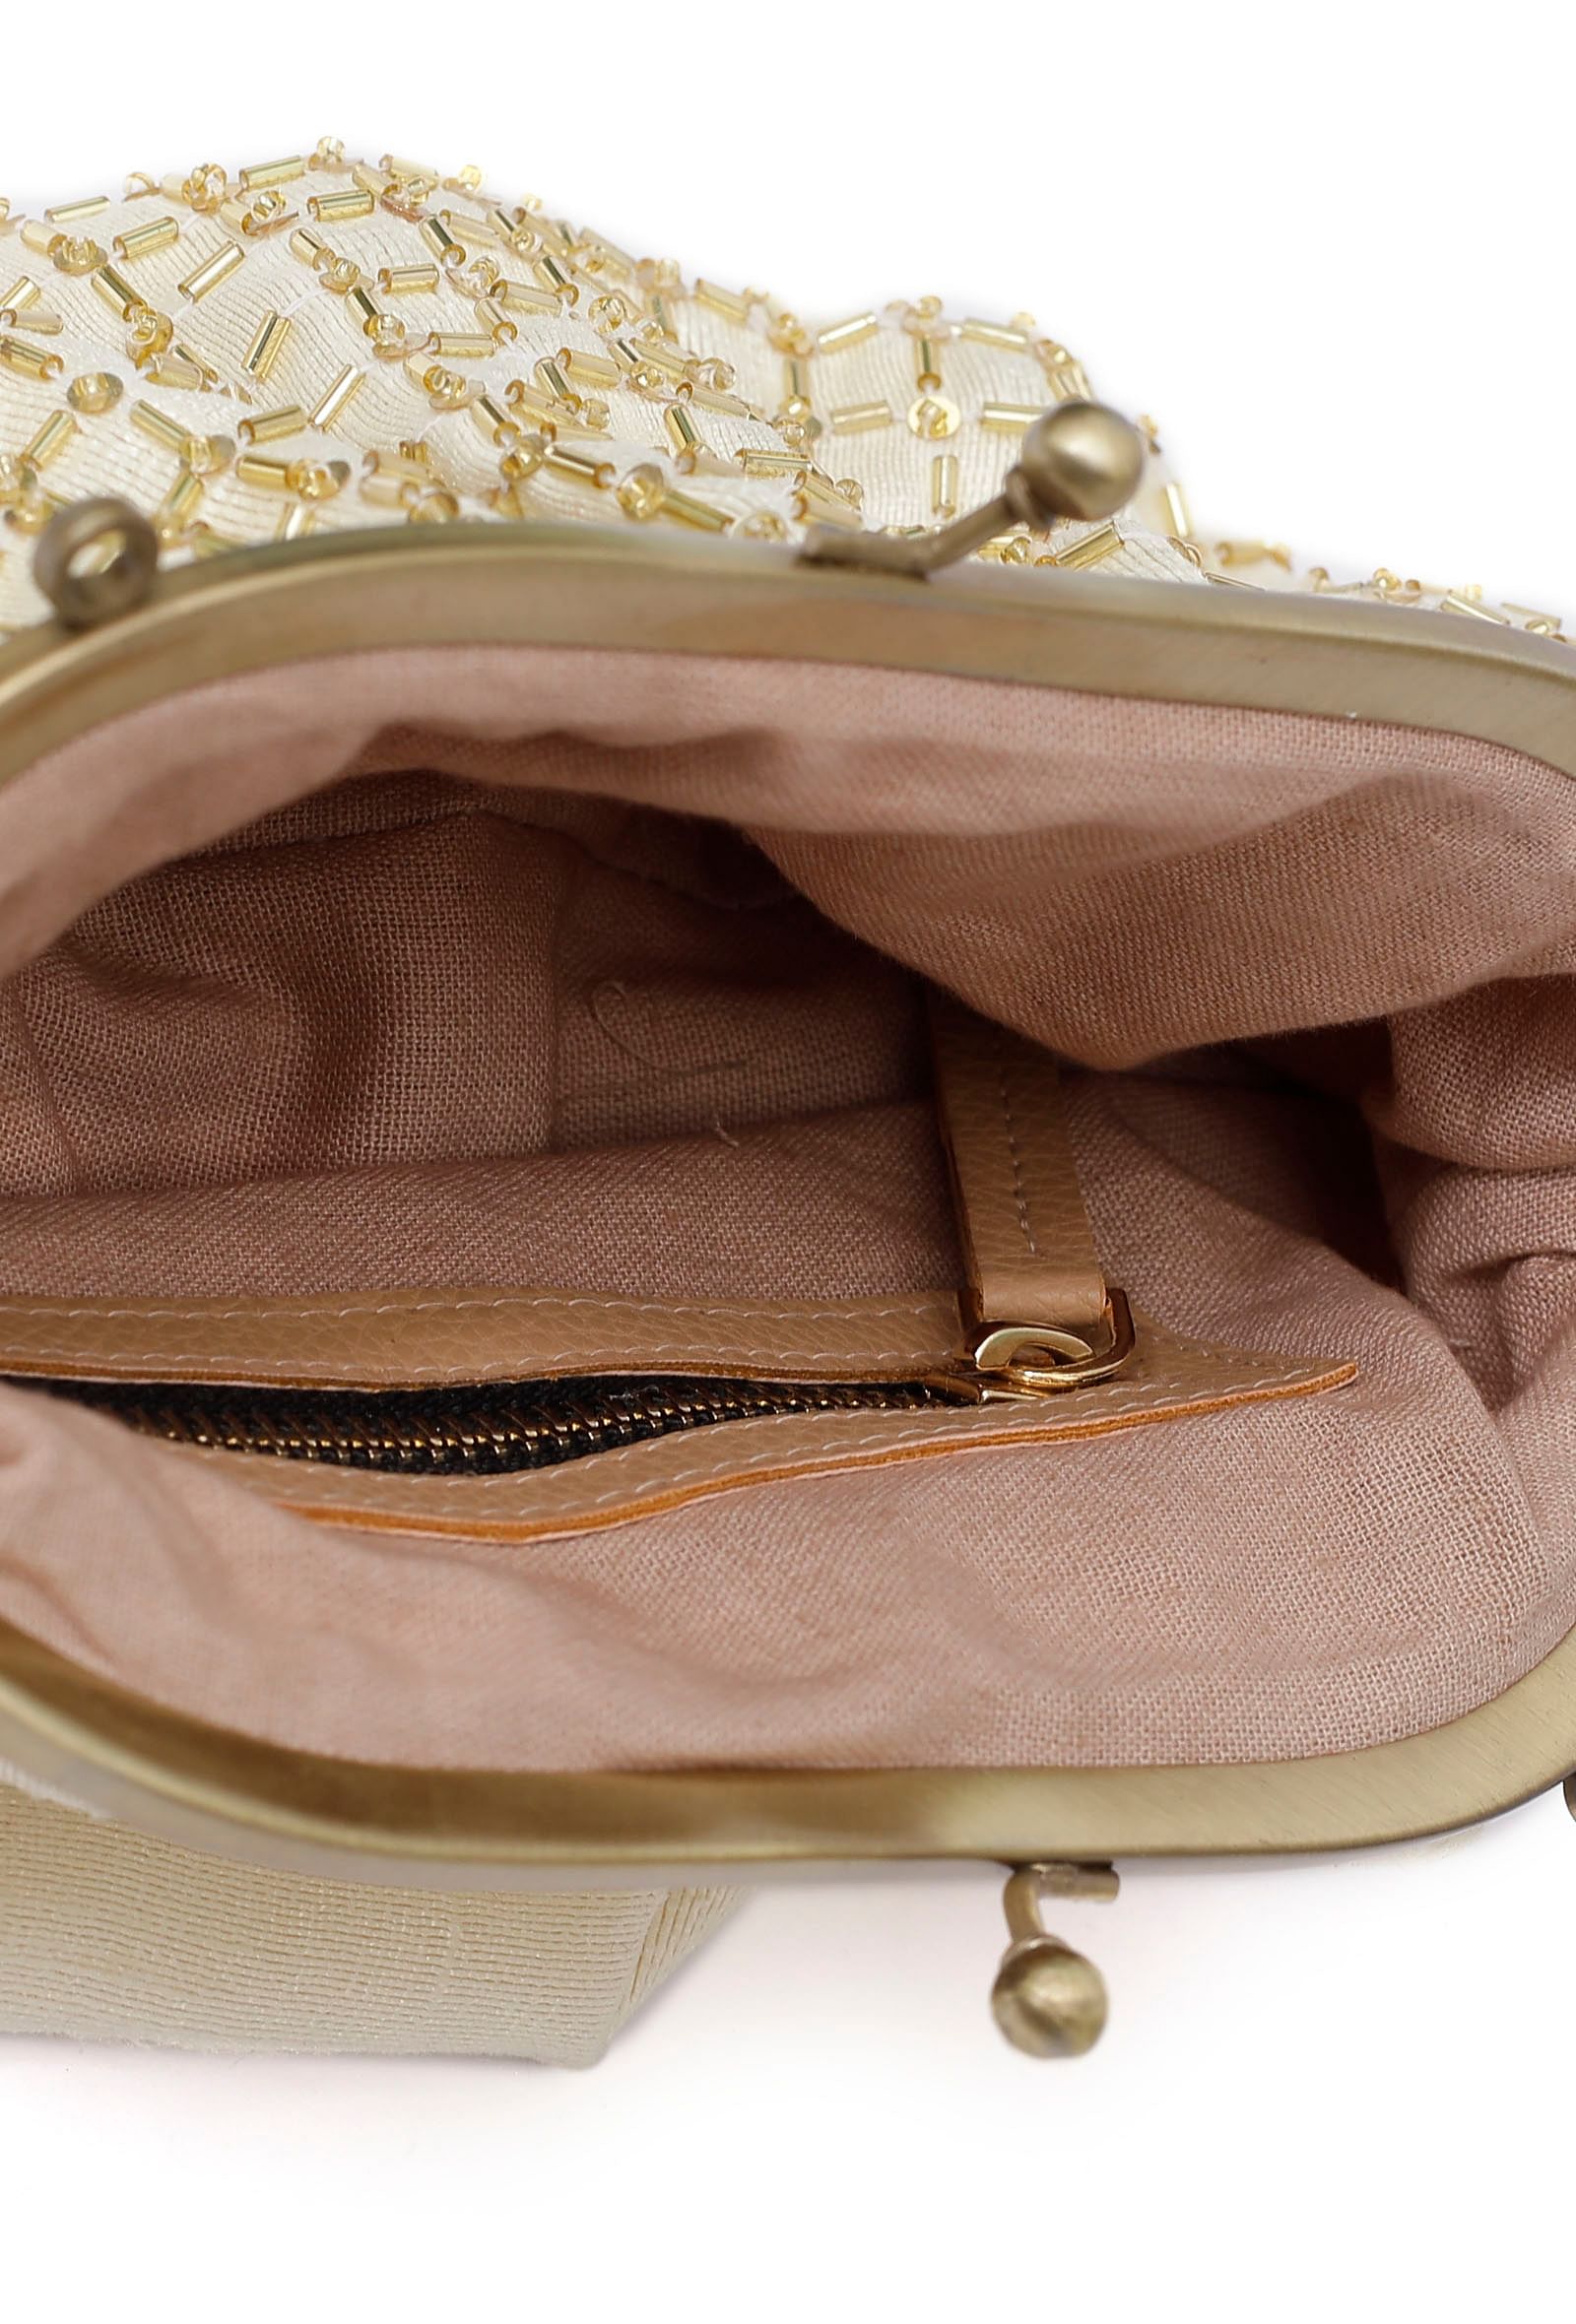 Kiya White-Golden Embellished Clutch Bag